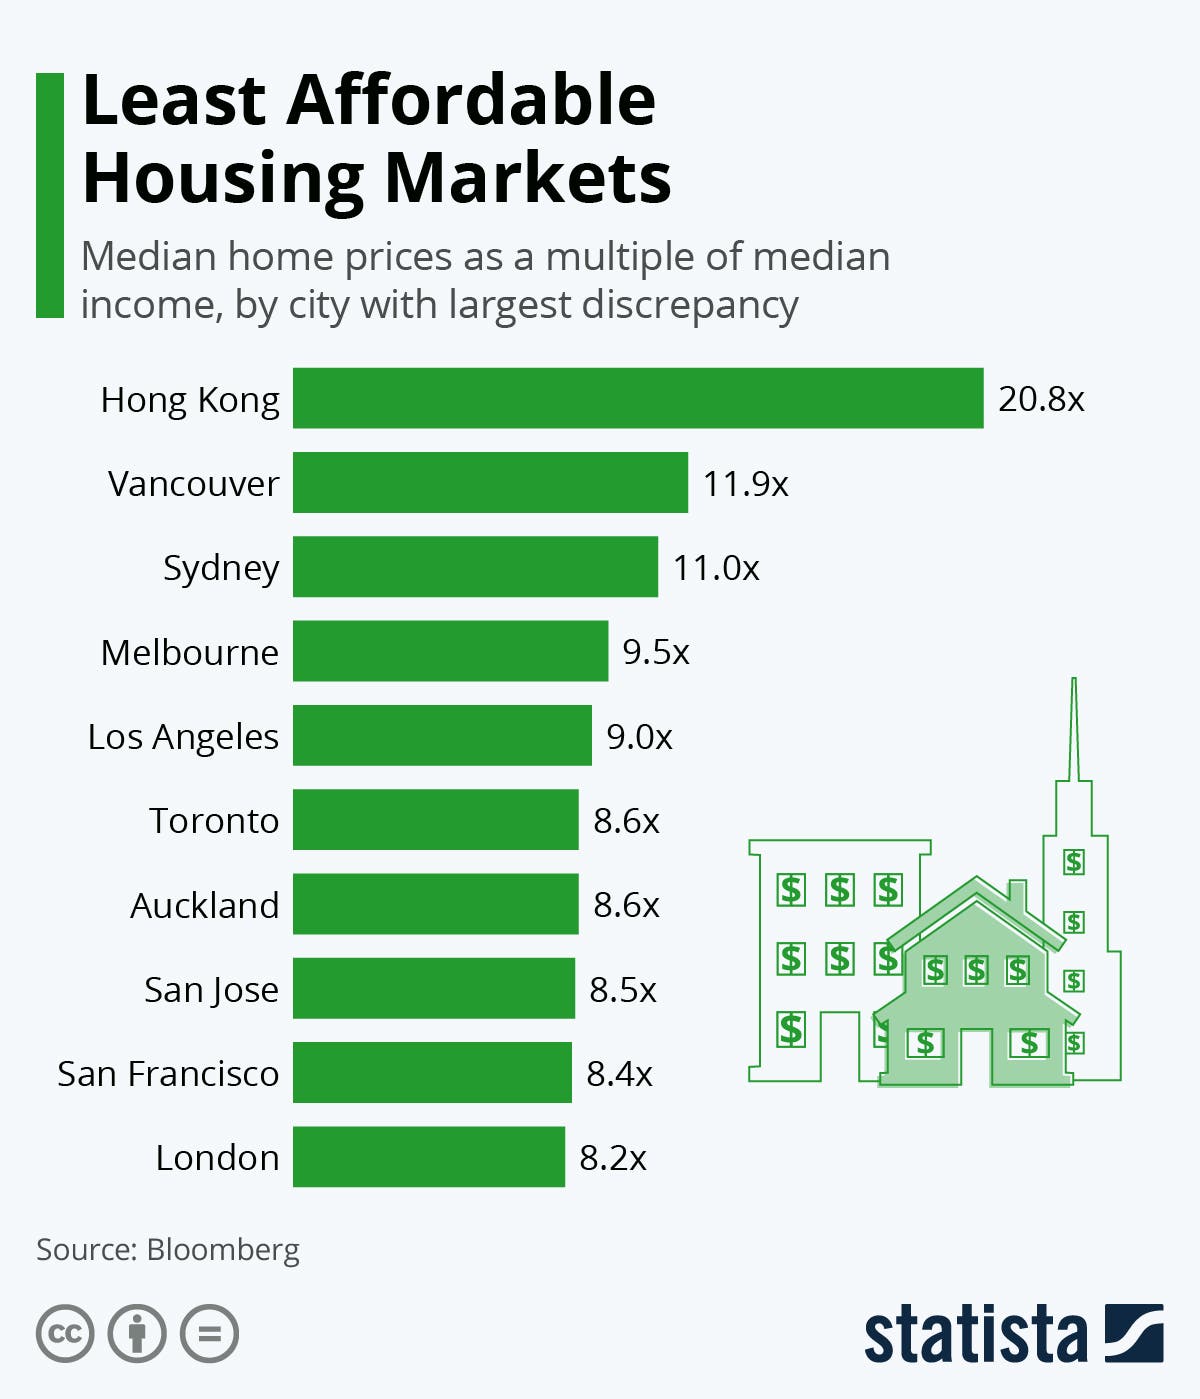 المدن الأعلى فجوة بين أسعار المساكن ومتوسط الأجور